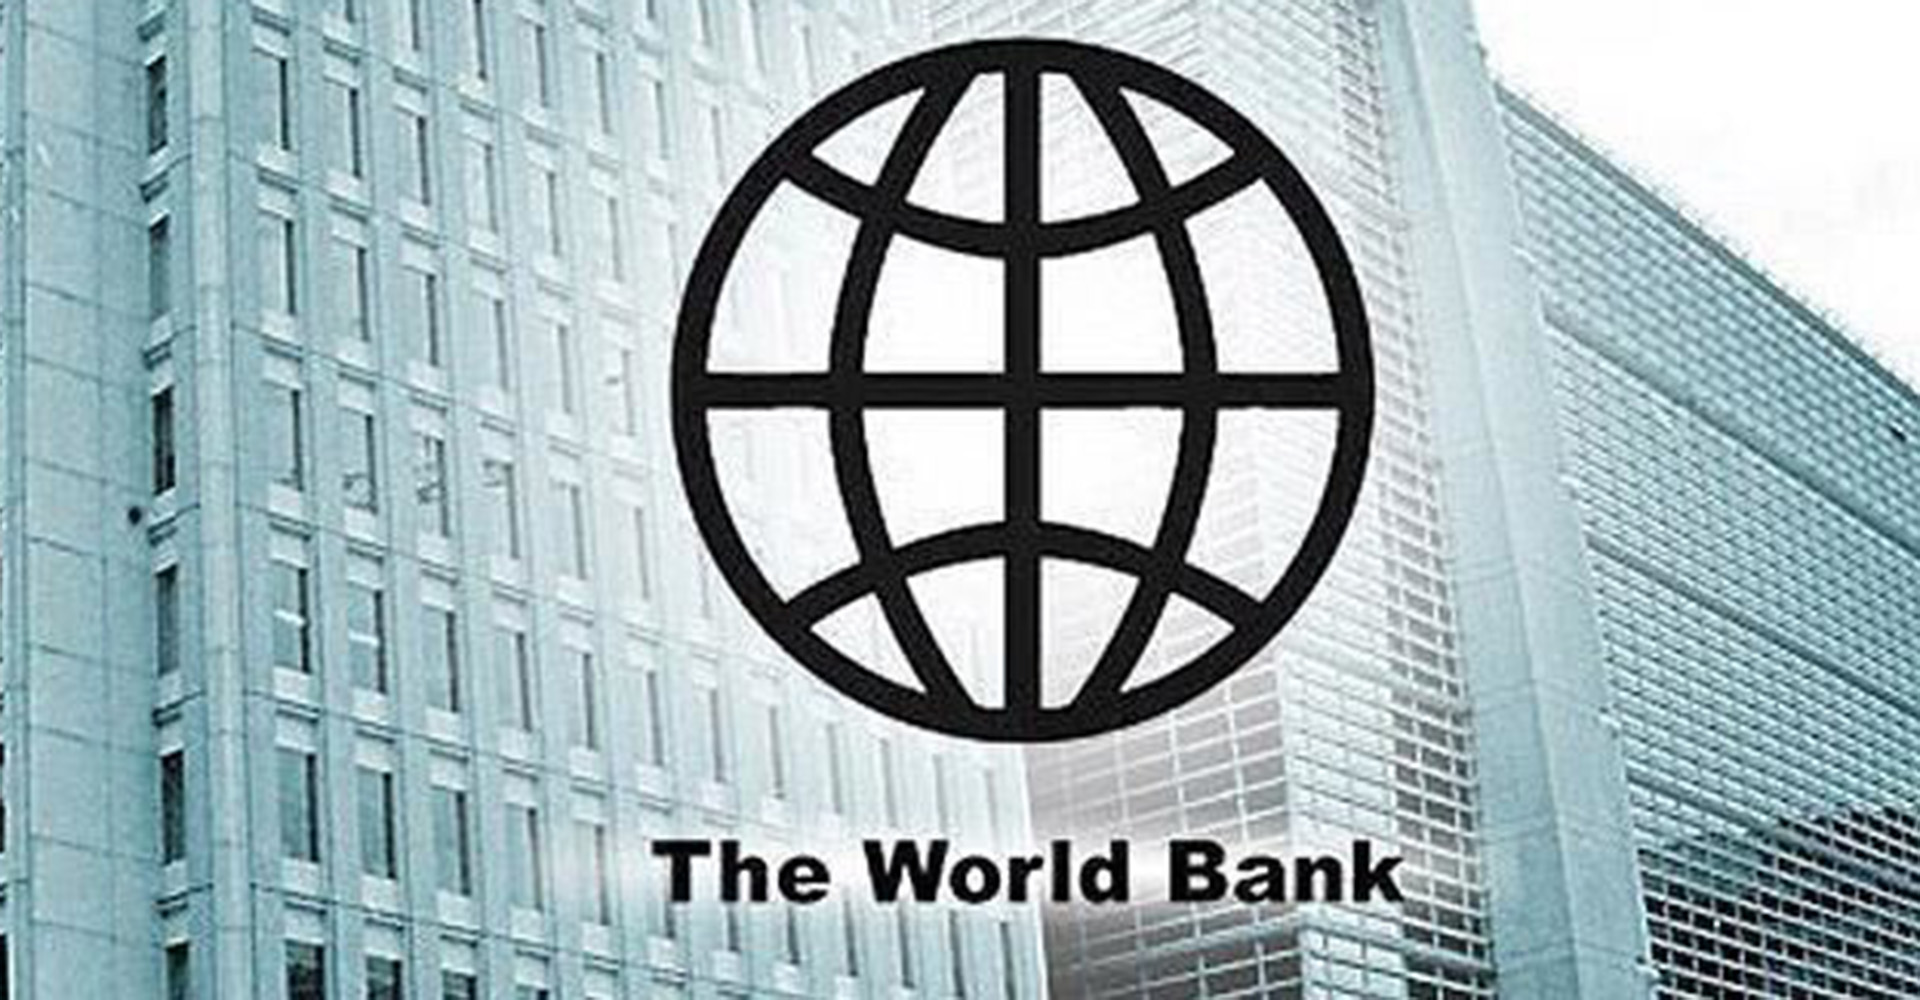 समावेशी विकासमा विश्व बैंकको जोड